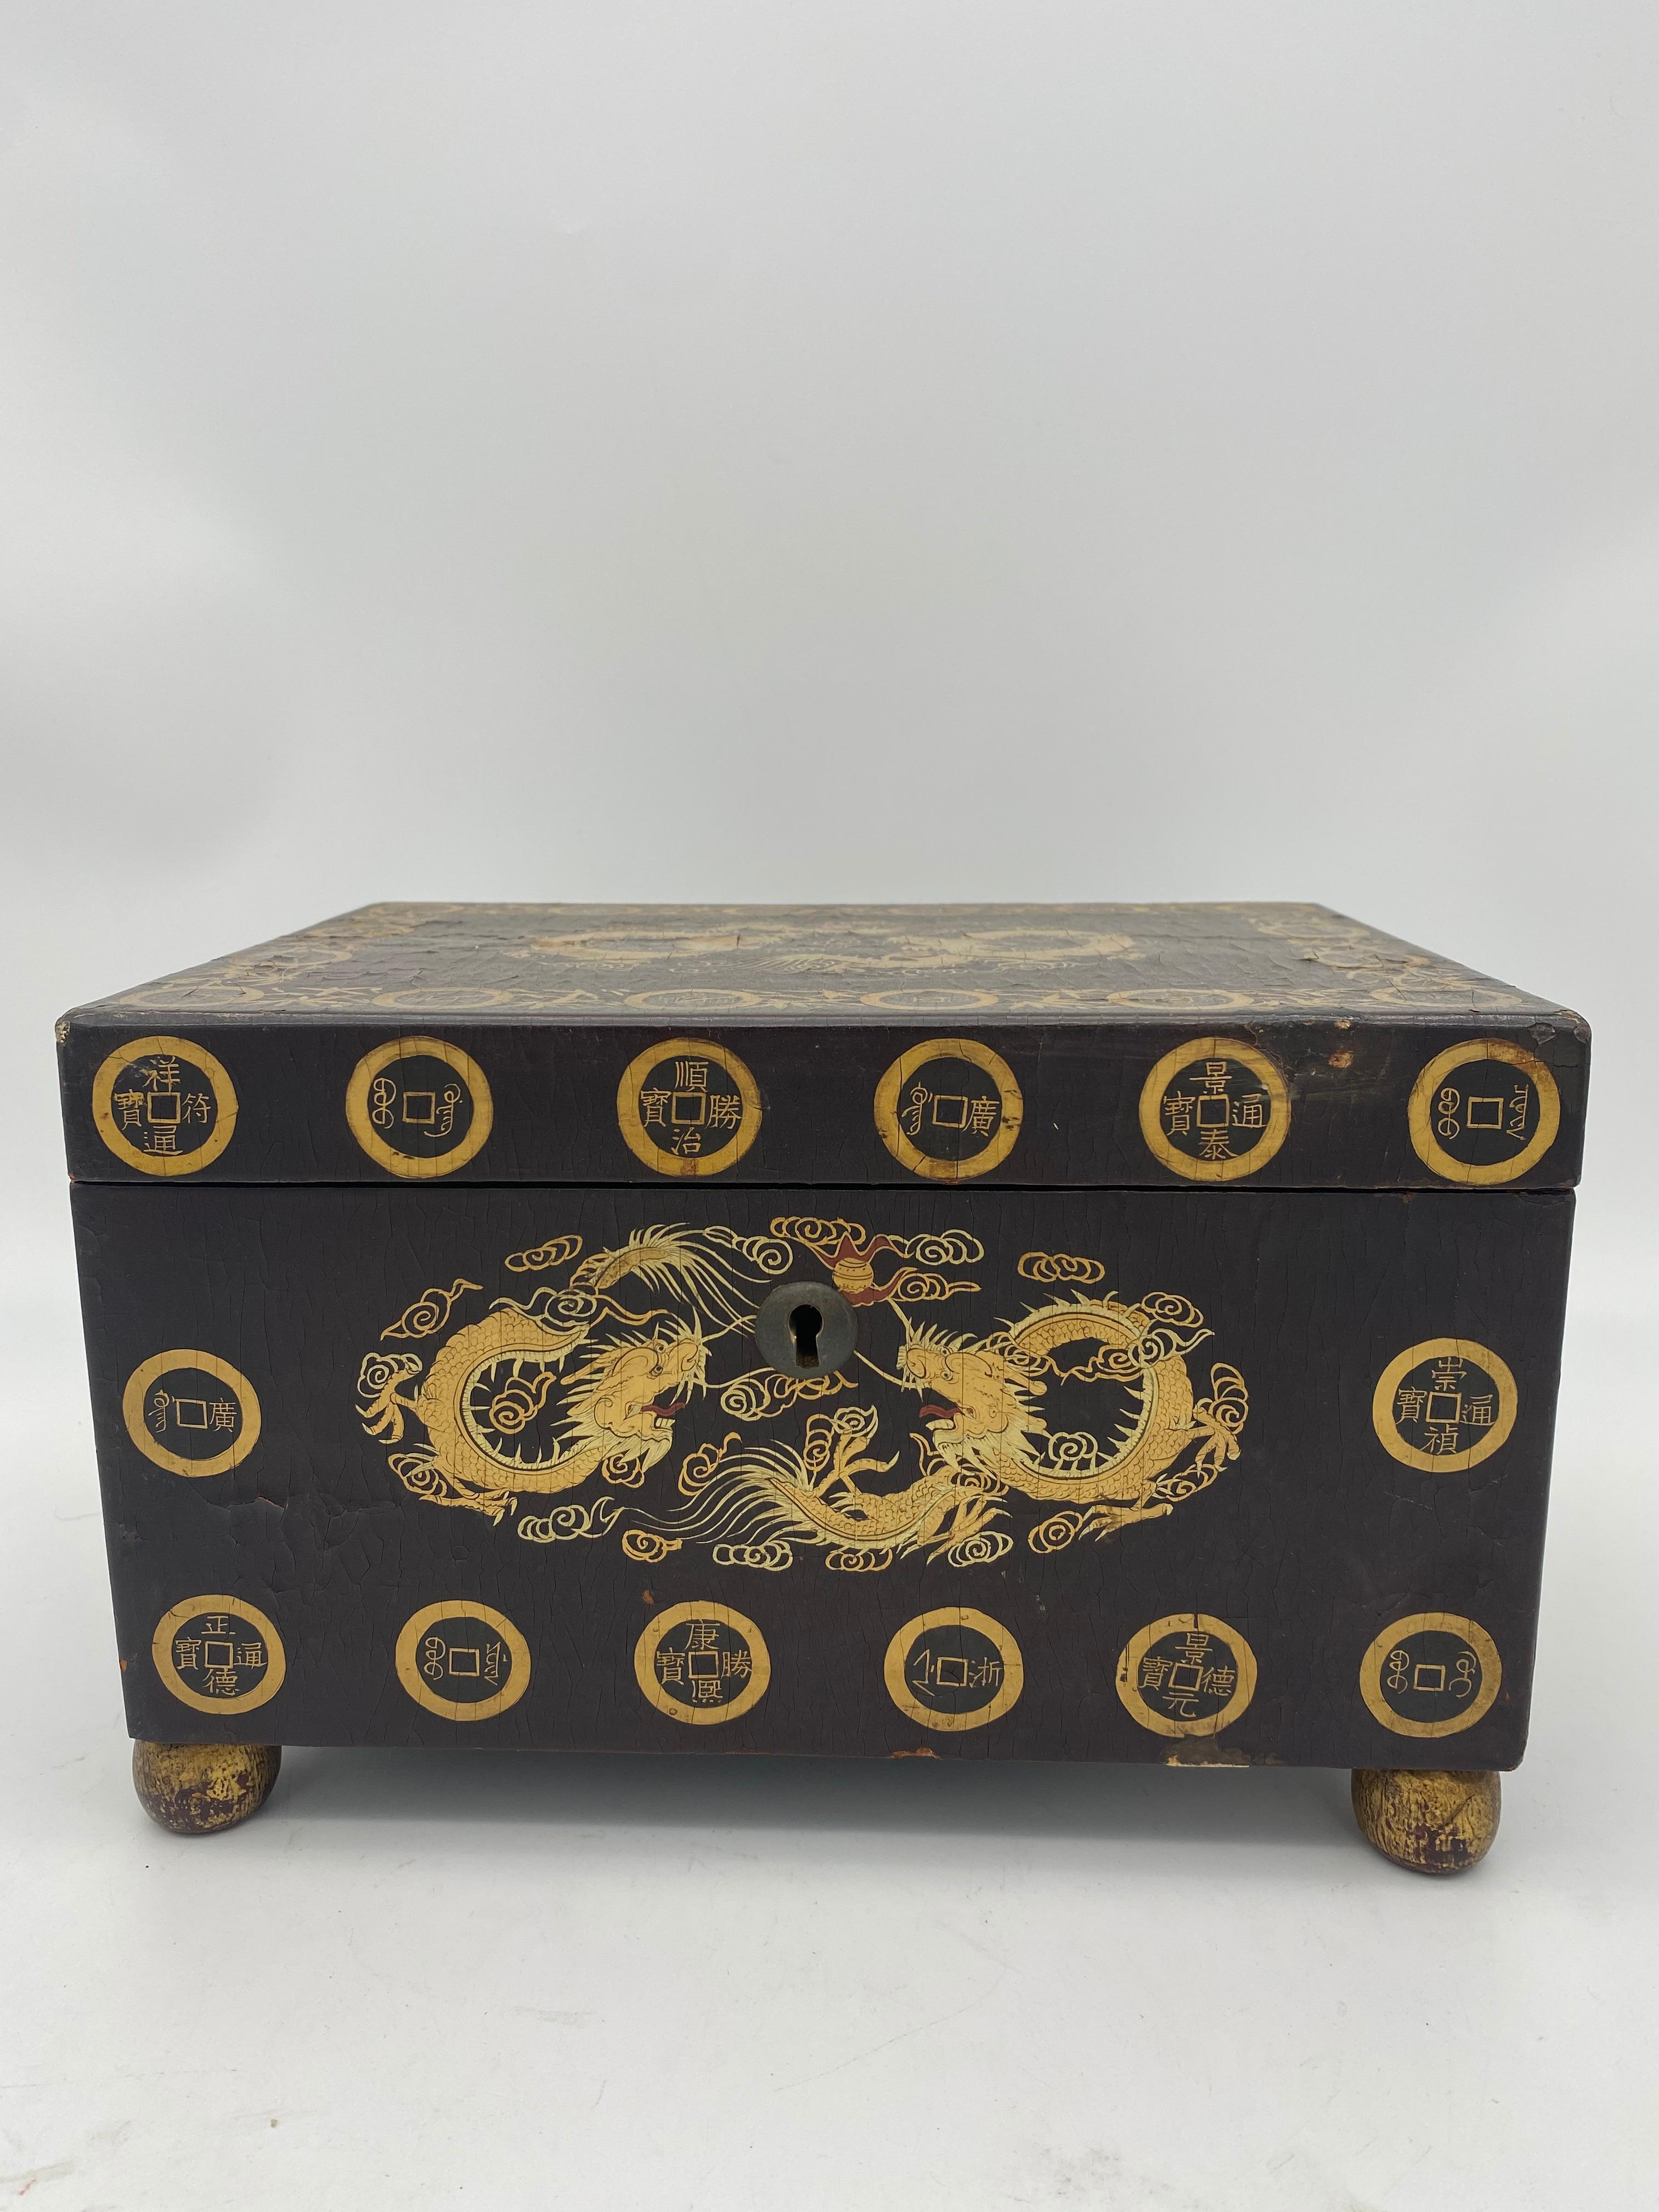 Boîte à thé chinoise en laque noire dorée du 19e siècle avec étain et clé, le corps de section rectangulaire décoré de dragons, une très belle pièce. Voir plus de photos, mesures : 7